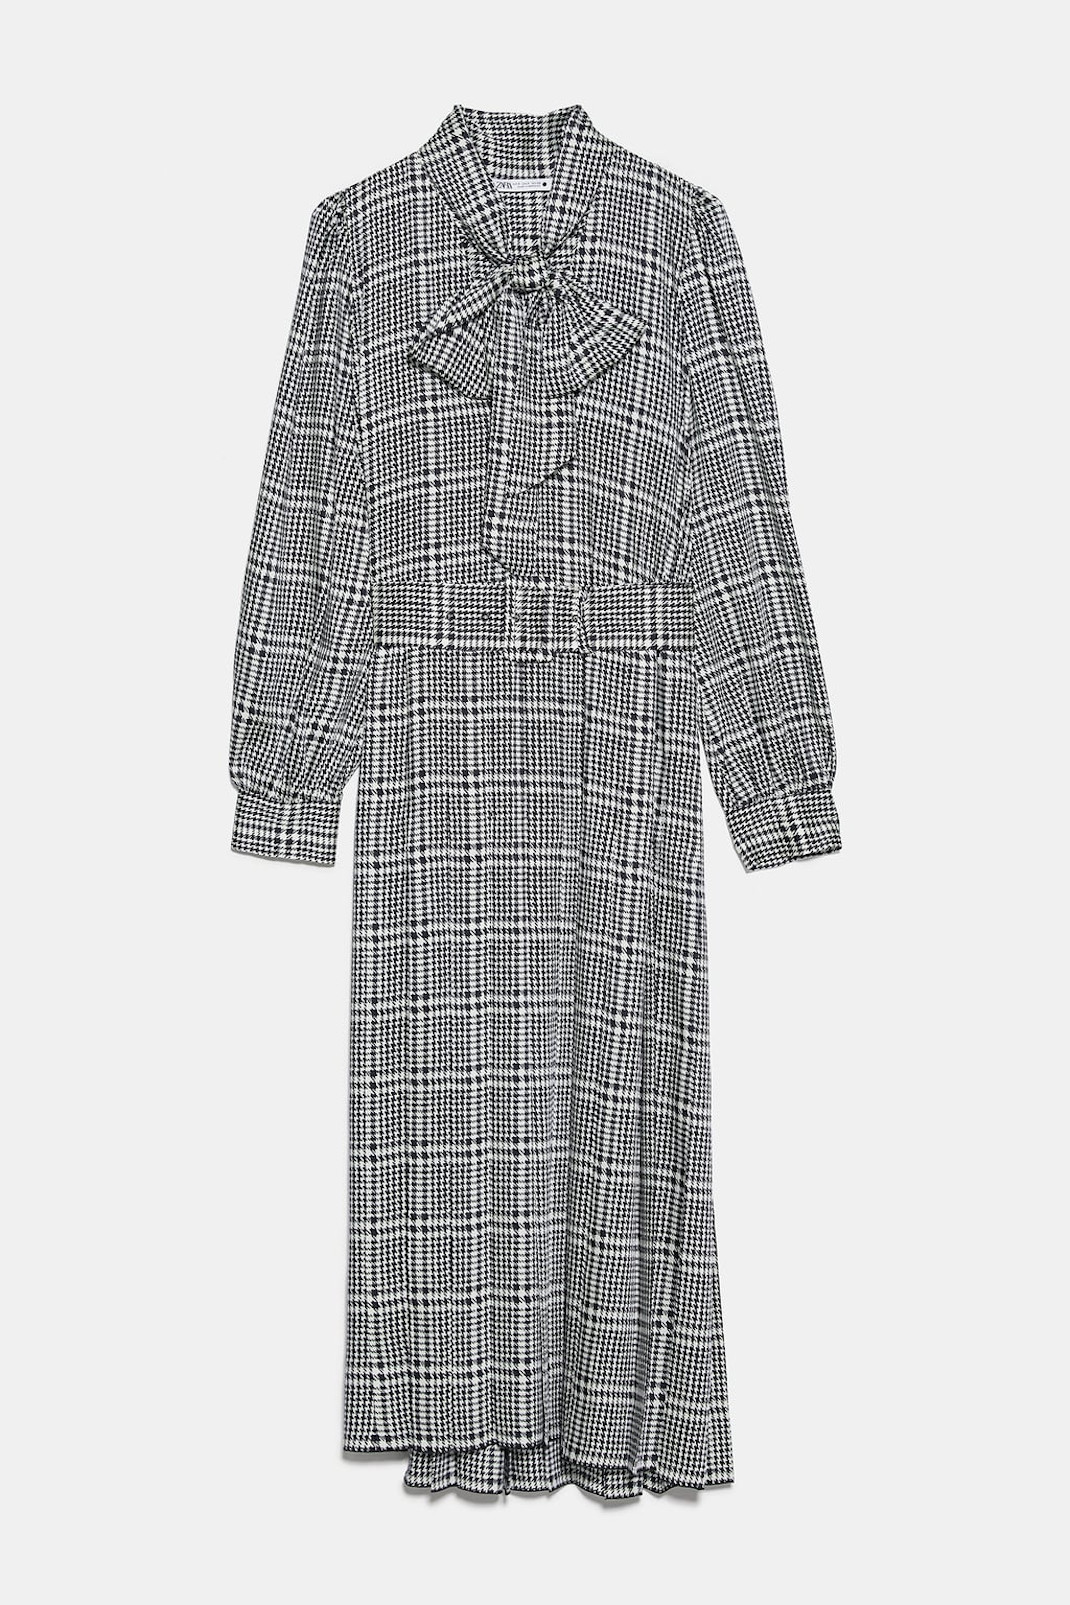 Η σικάτη εμφάνιση της Κέιτ Μίντλετον -Με στιλάτο φόρεμα από τα Zara, κοστίζει κάτω από 40 ευρώ (εικόνες)